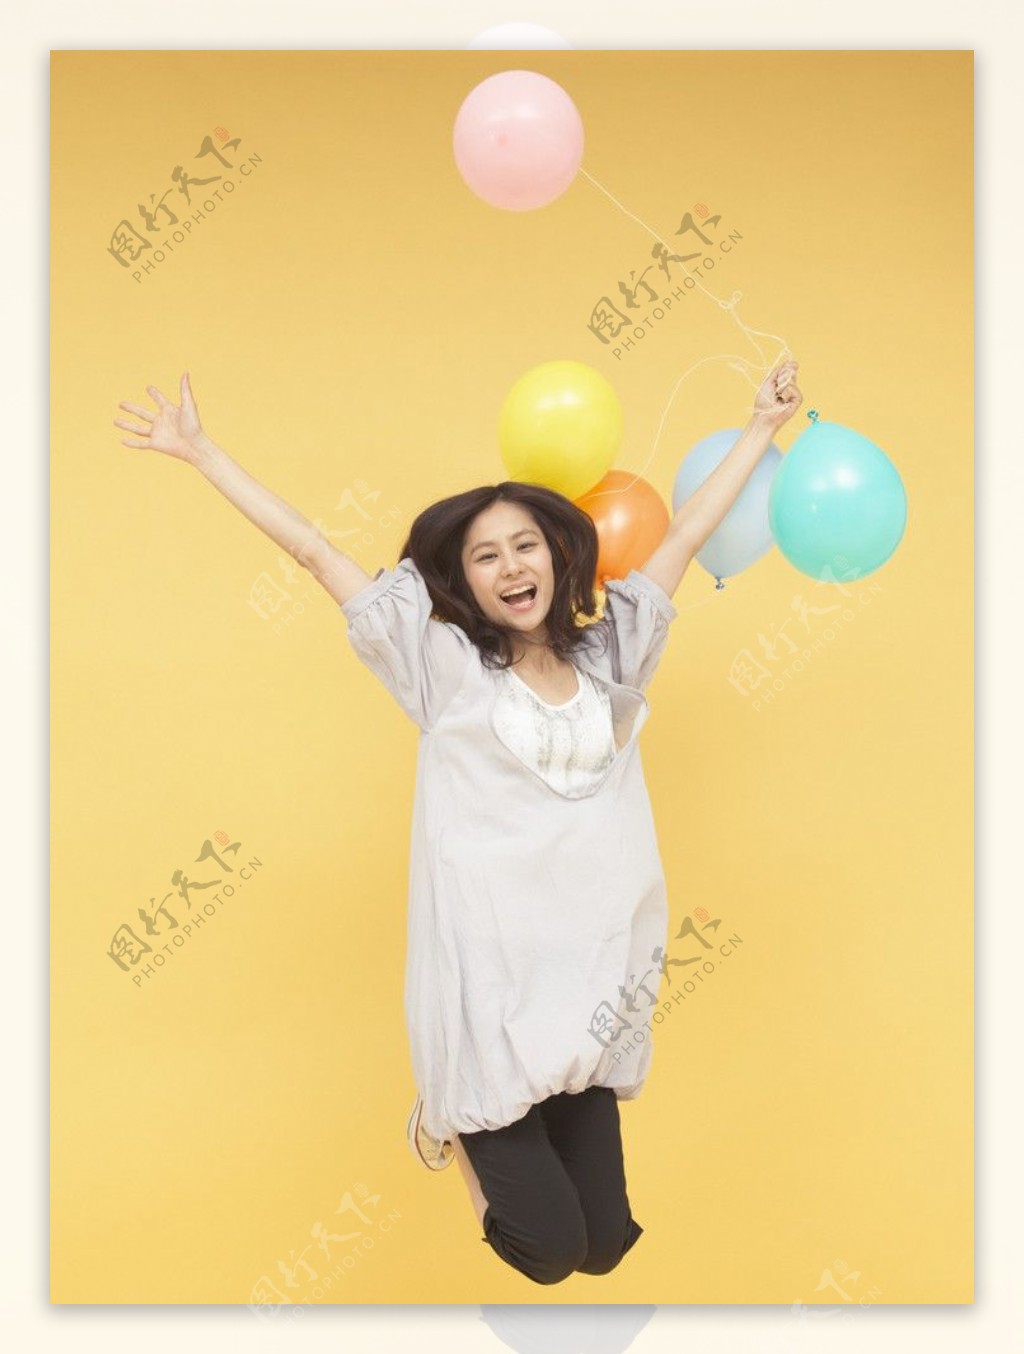 拿着彩色气球跳跃的美女图片